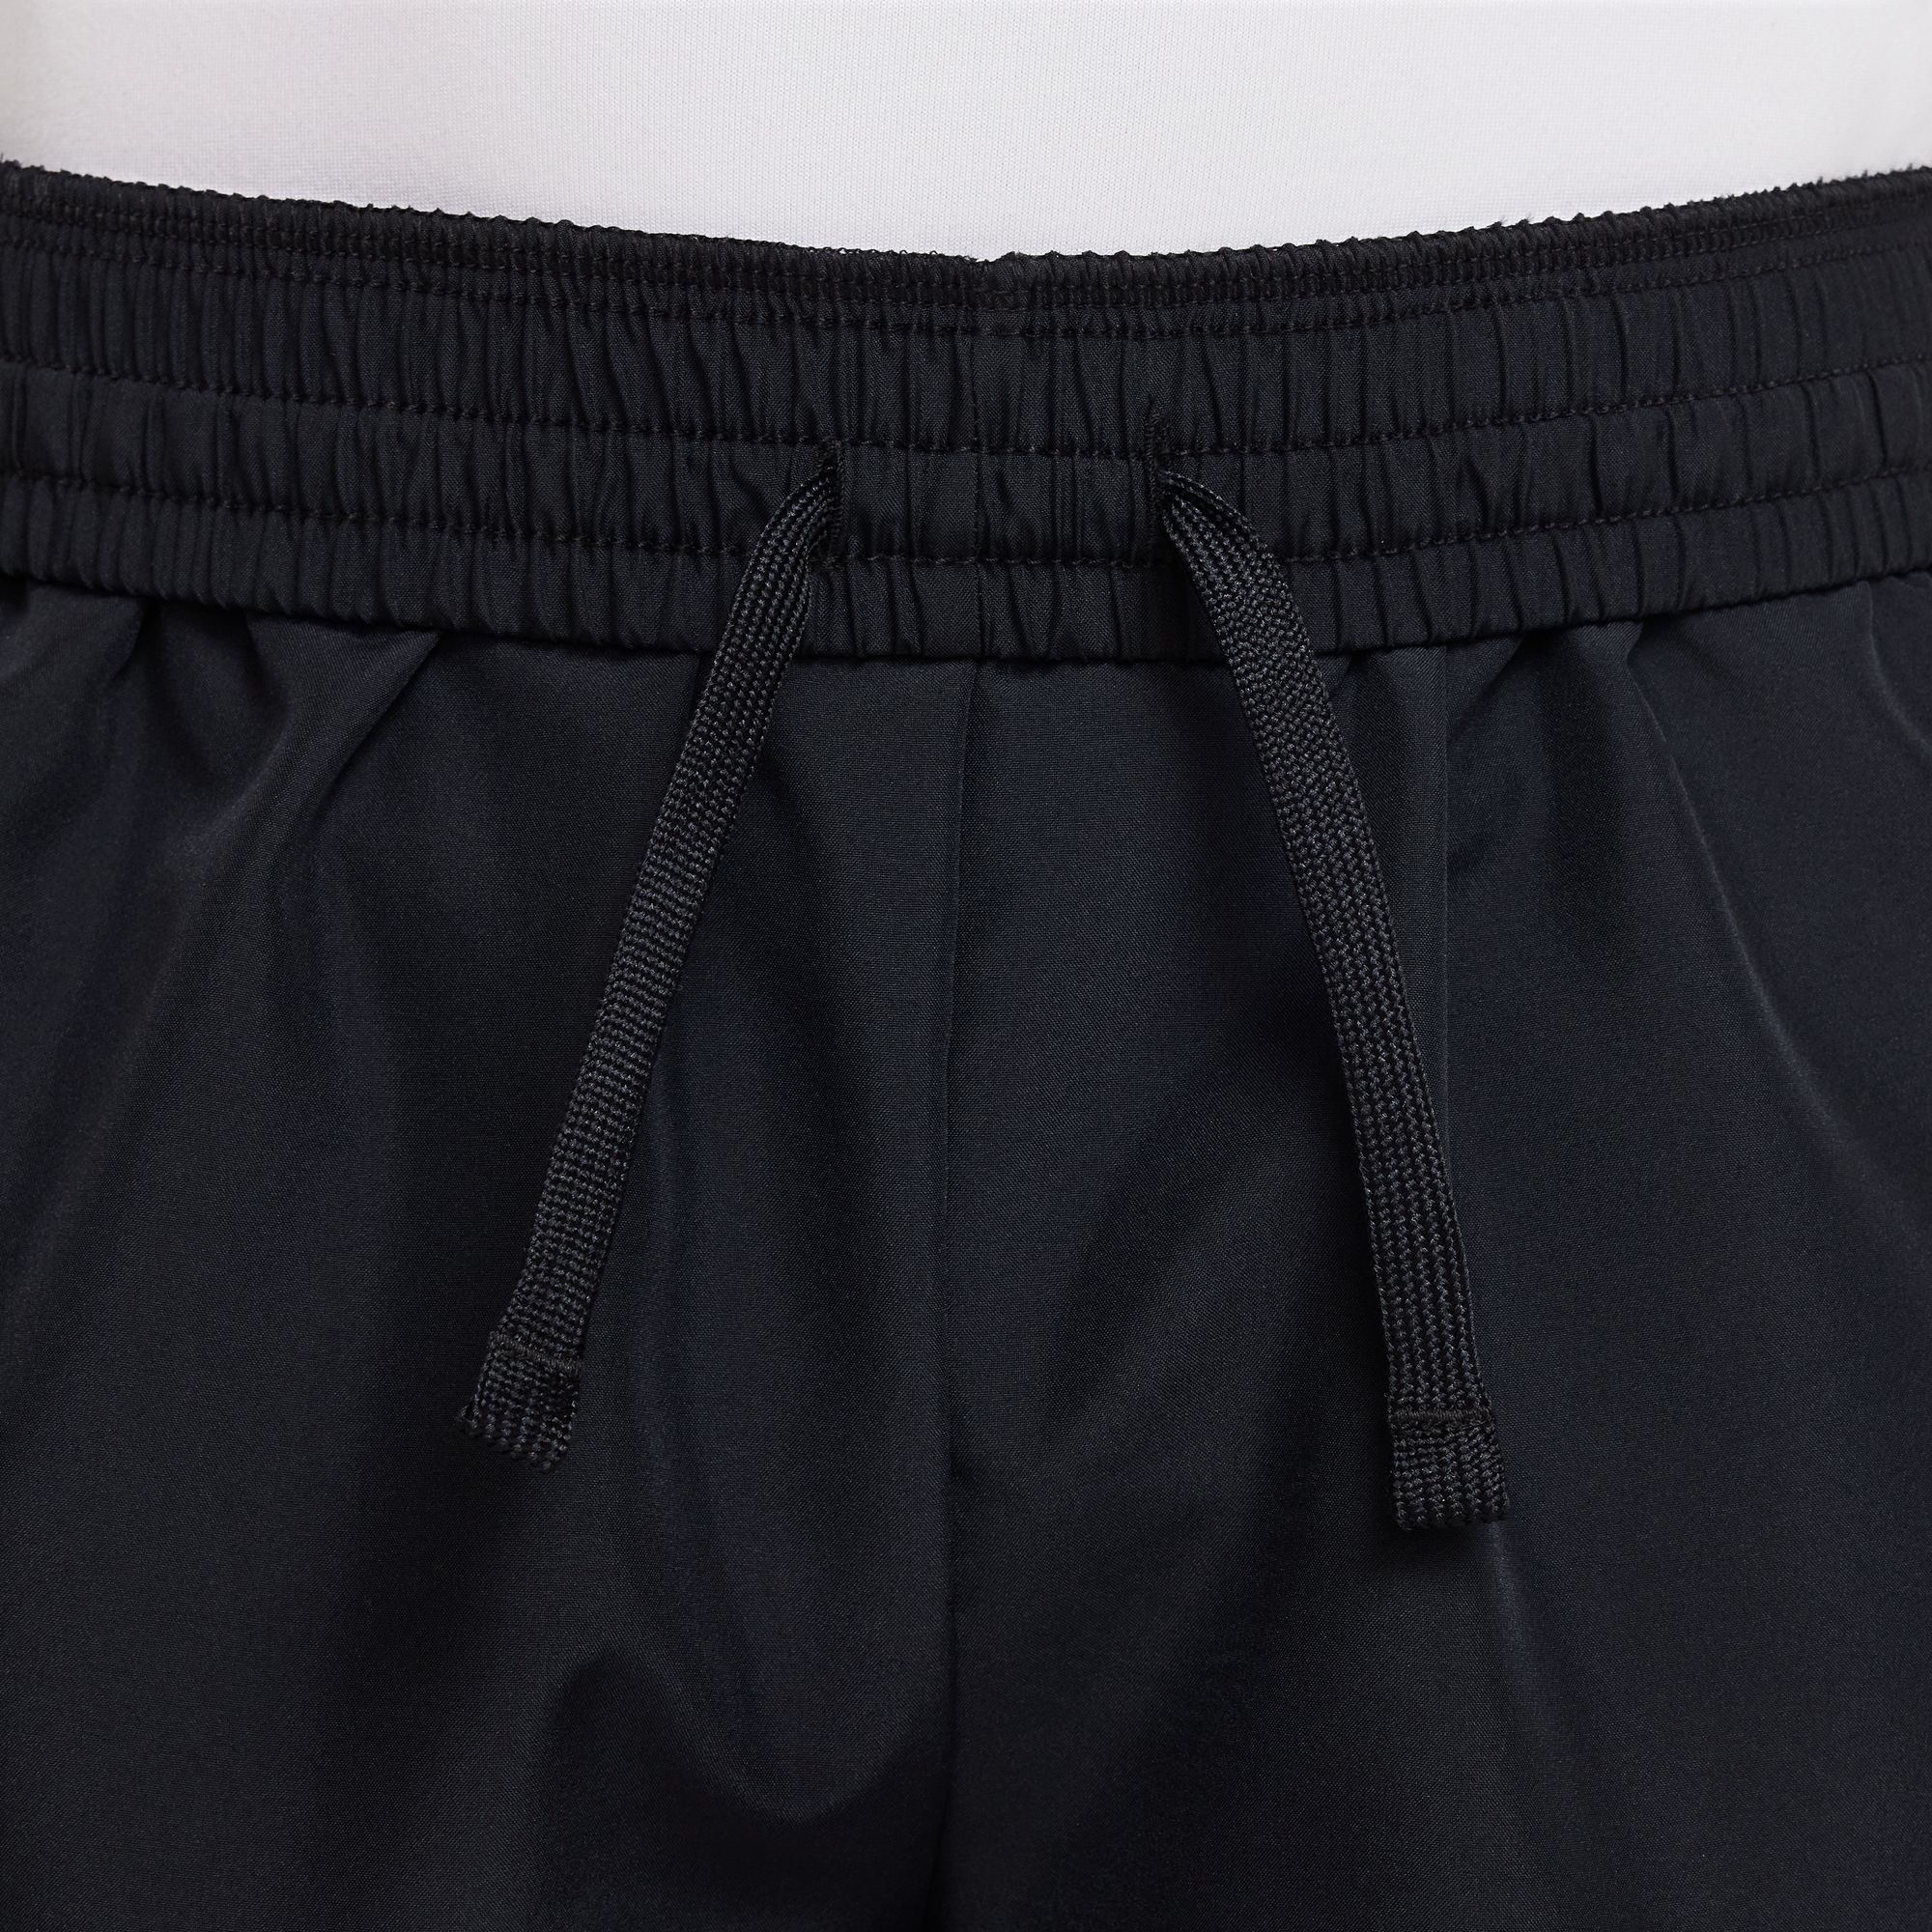 Nike Dri-FIT Boys' Woven Shorts Black (4)